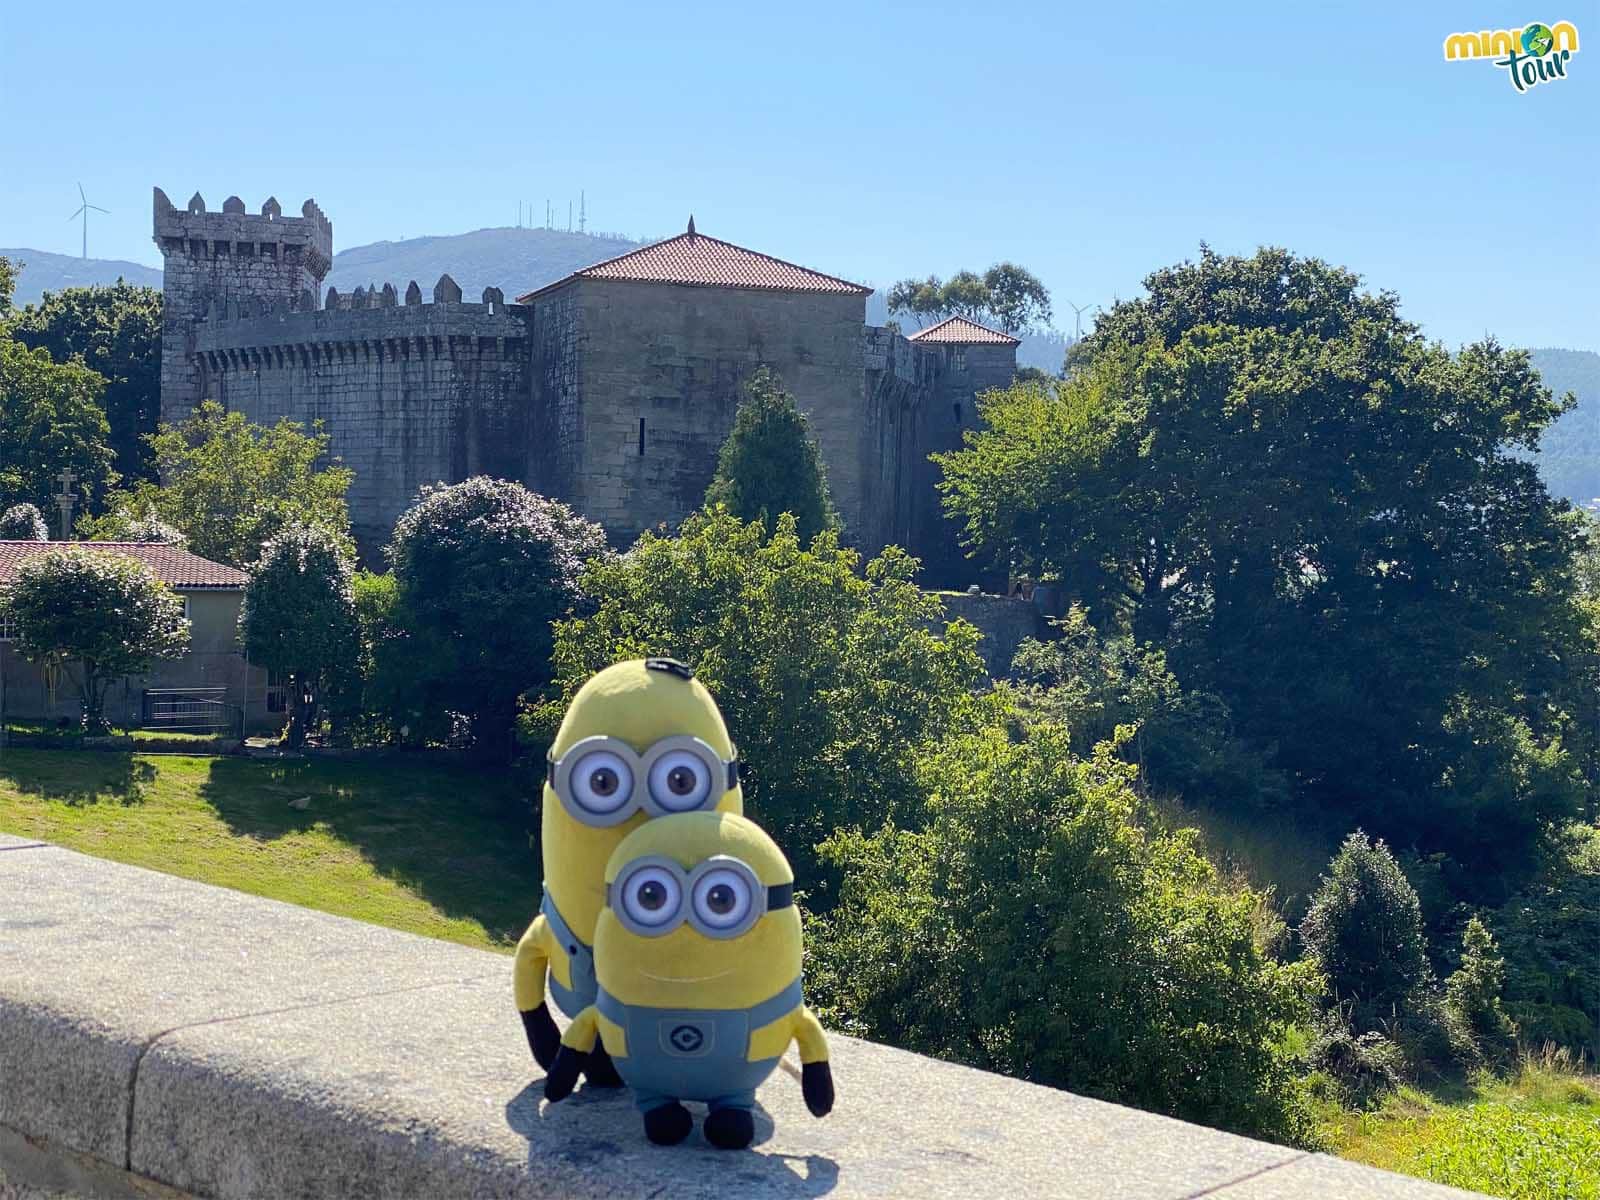 El Castillo de Vimianzo es uno de los mejor conservados de Galicia